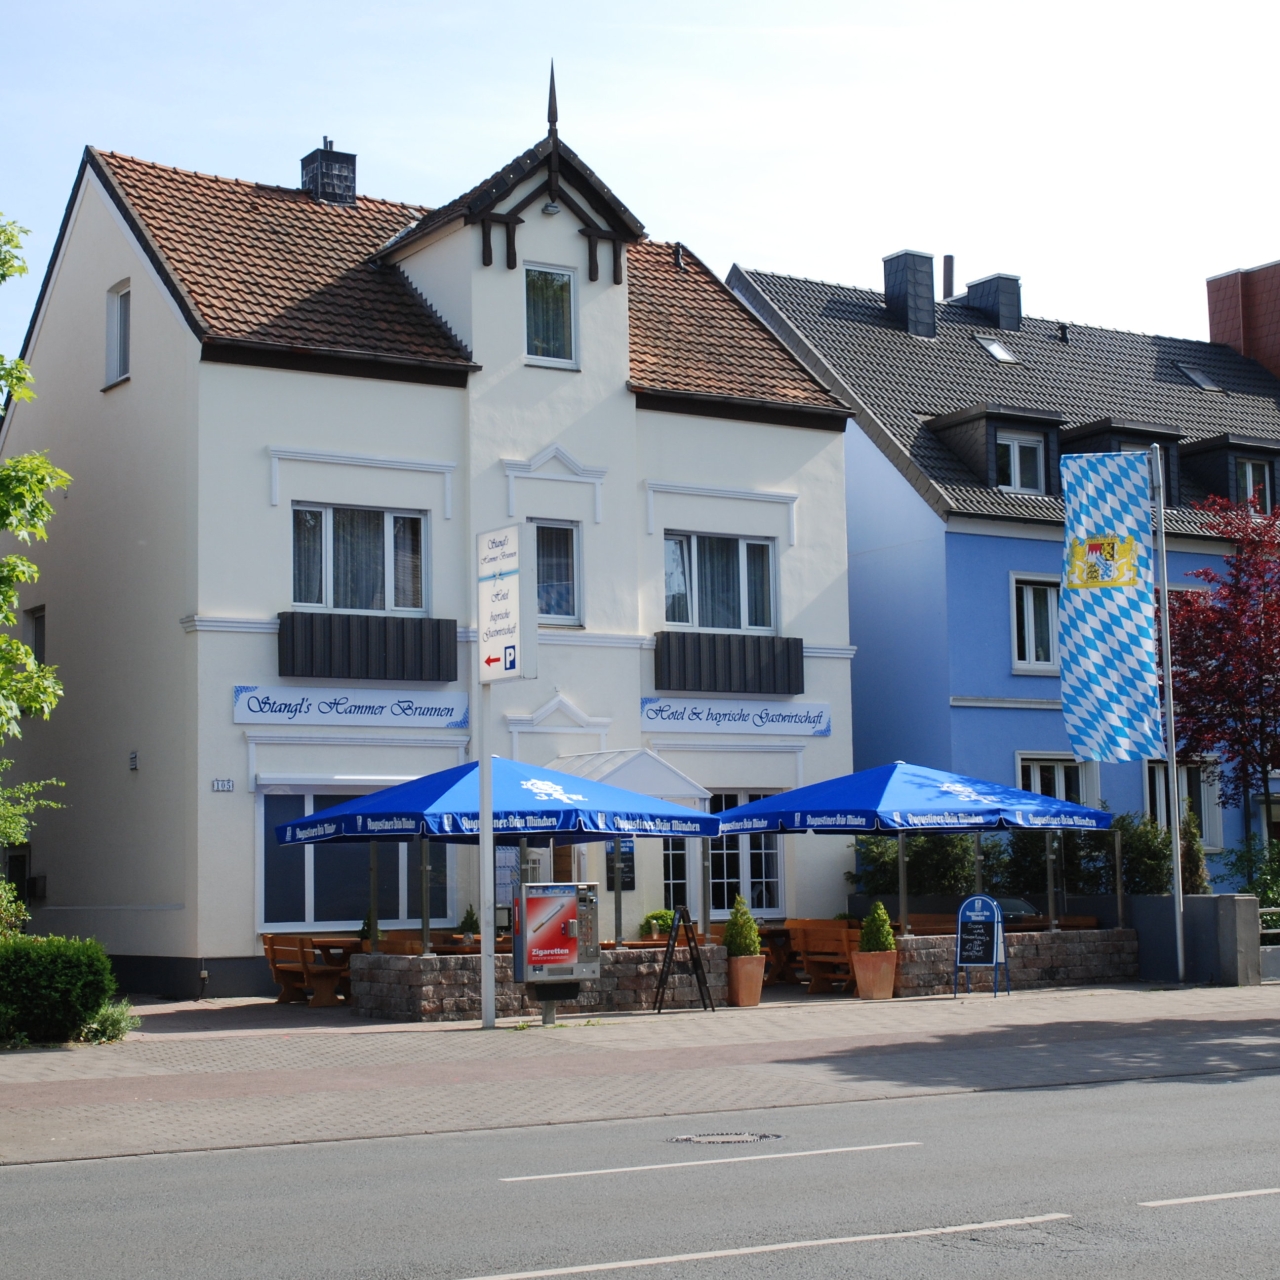 Hotel Stangl´s Hammer Brunnen - 3 HRS star hotel in Hamm (North  Rhine-Westphalia)